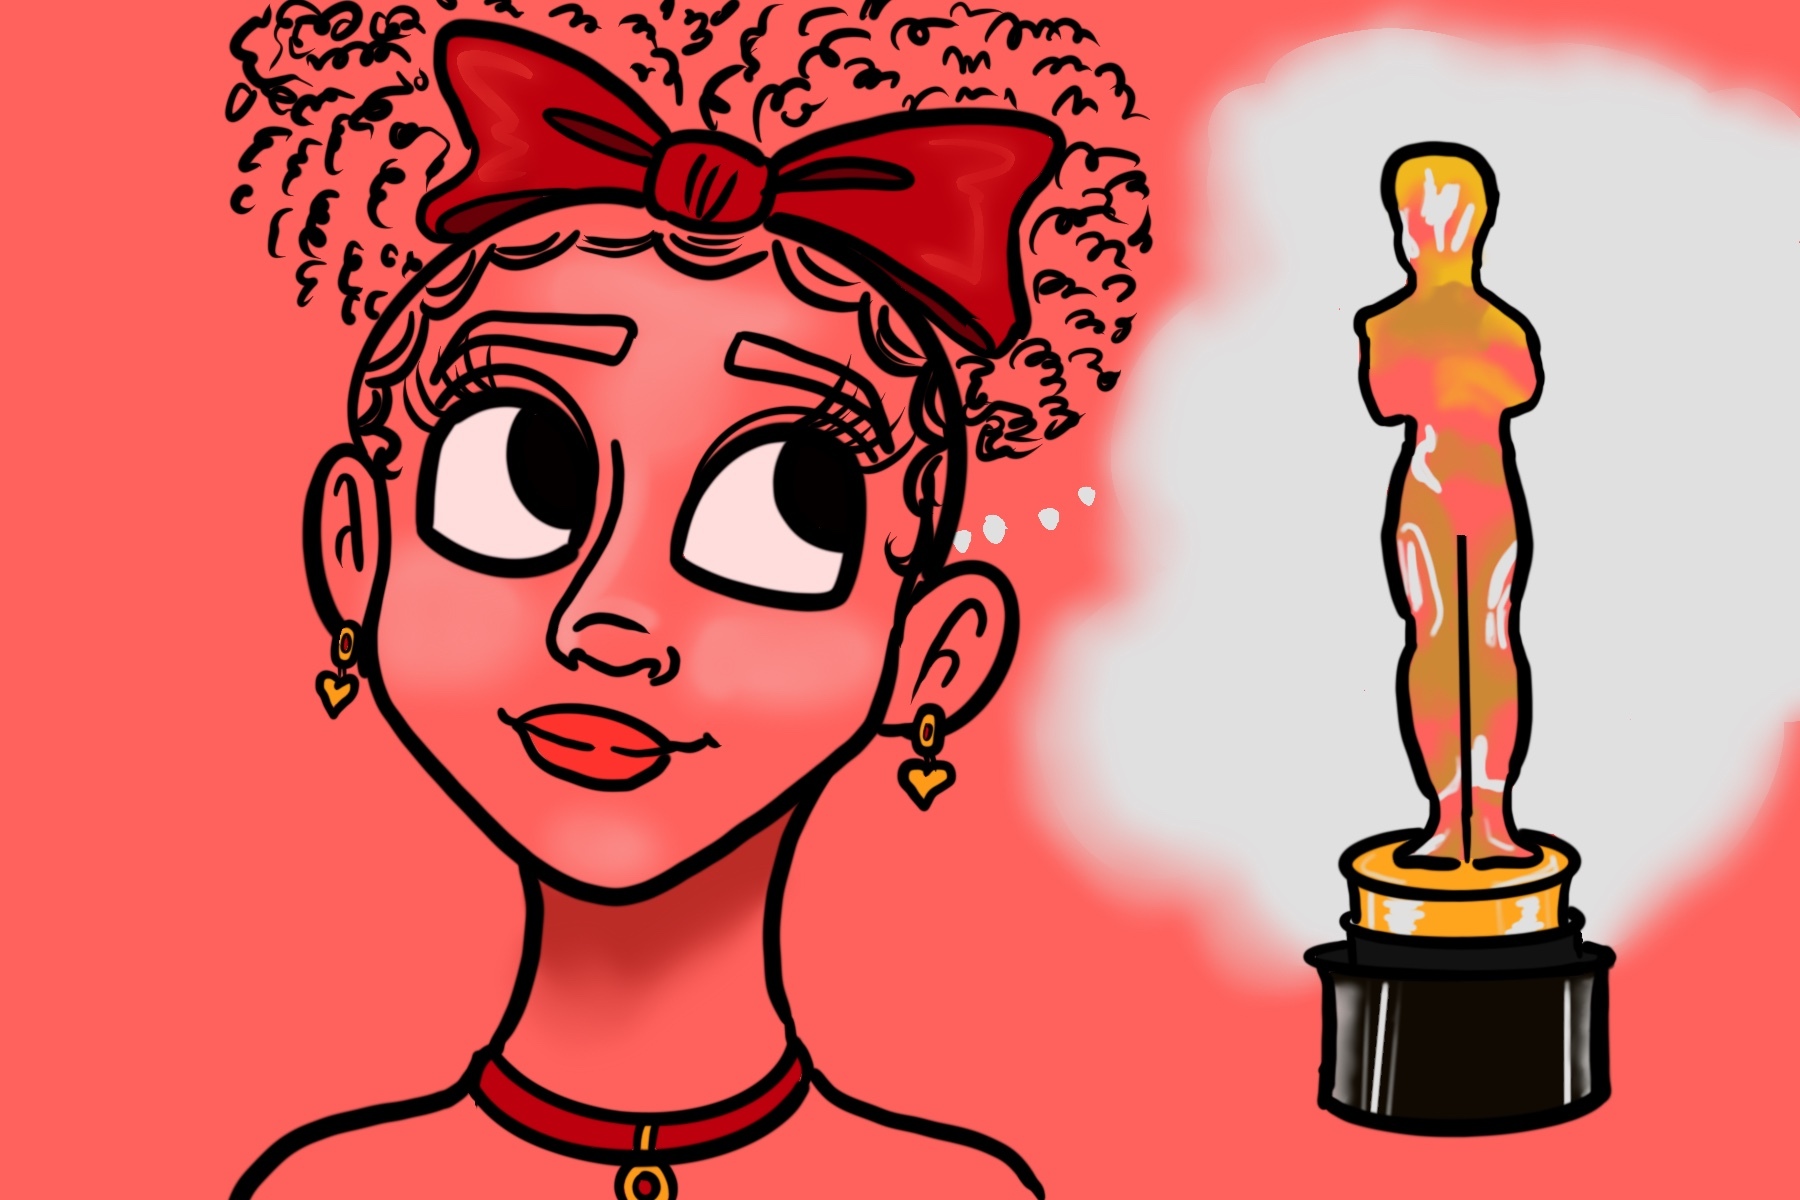 An illustration of an animation award for the Oscars.